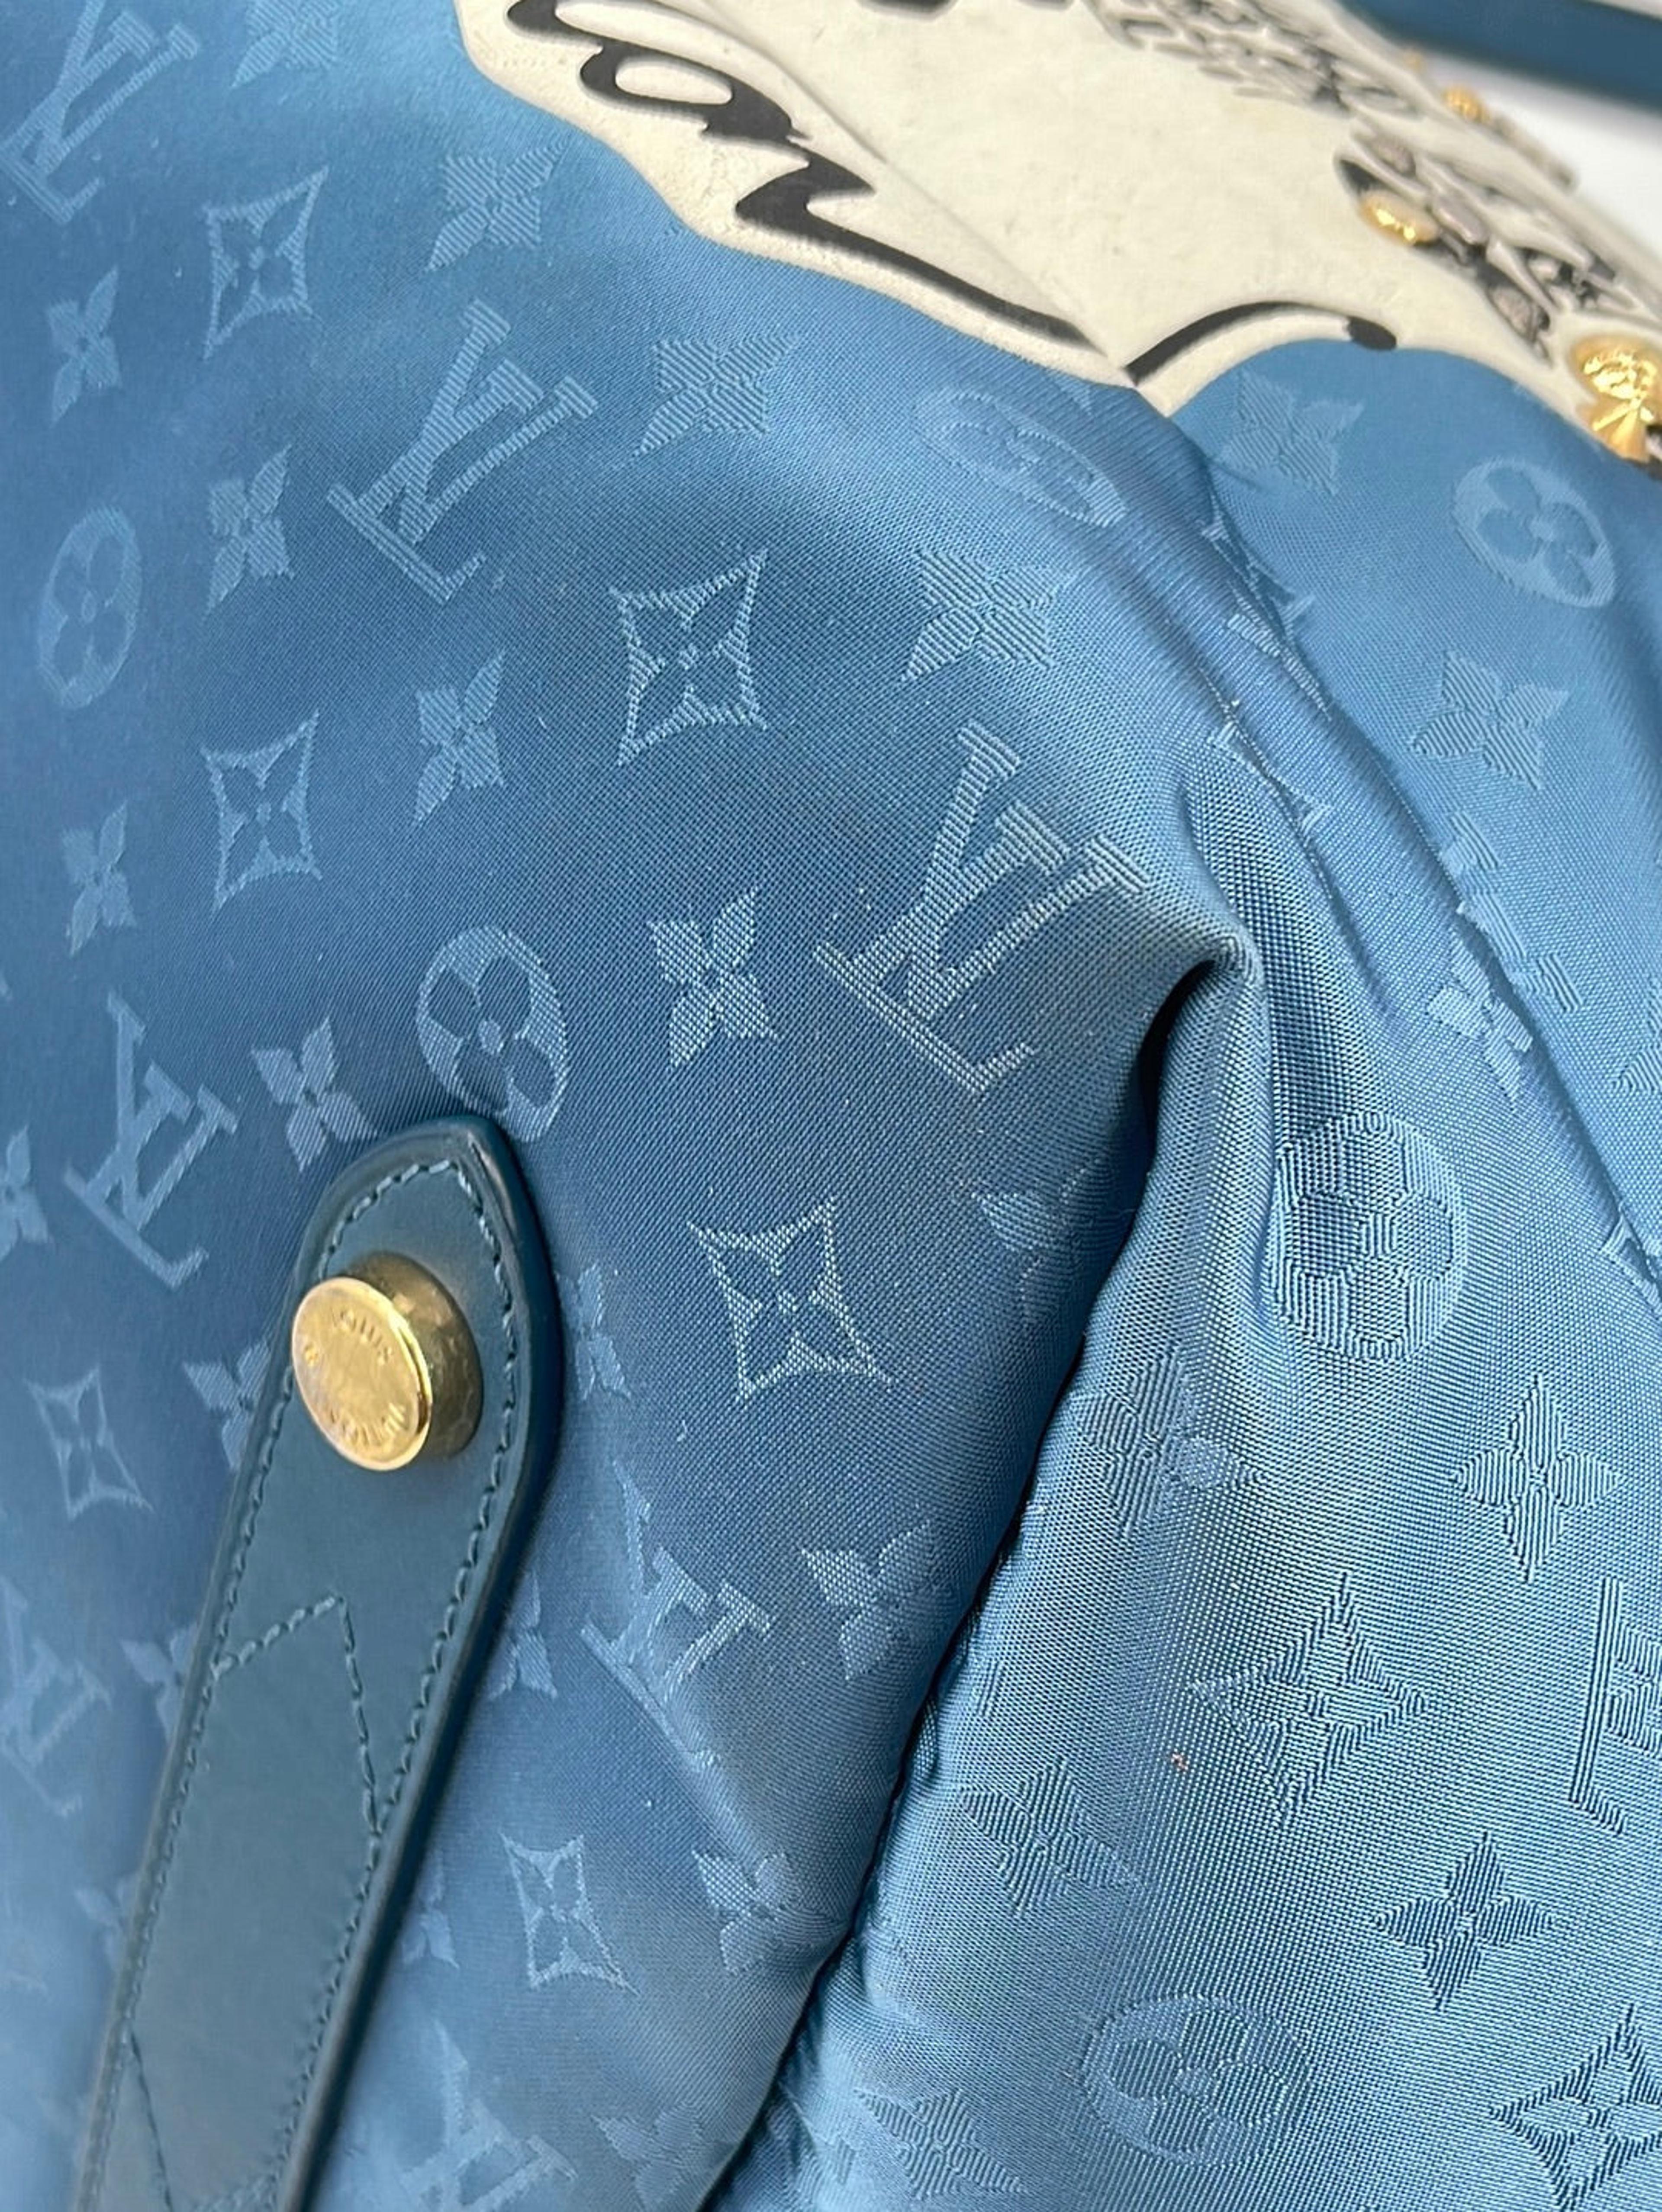 Preloved Louis Vuitton Monogram Canvas Nouvelle Vague Handbag